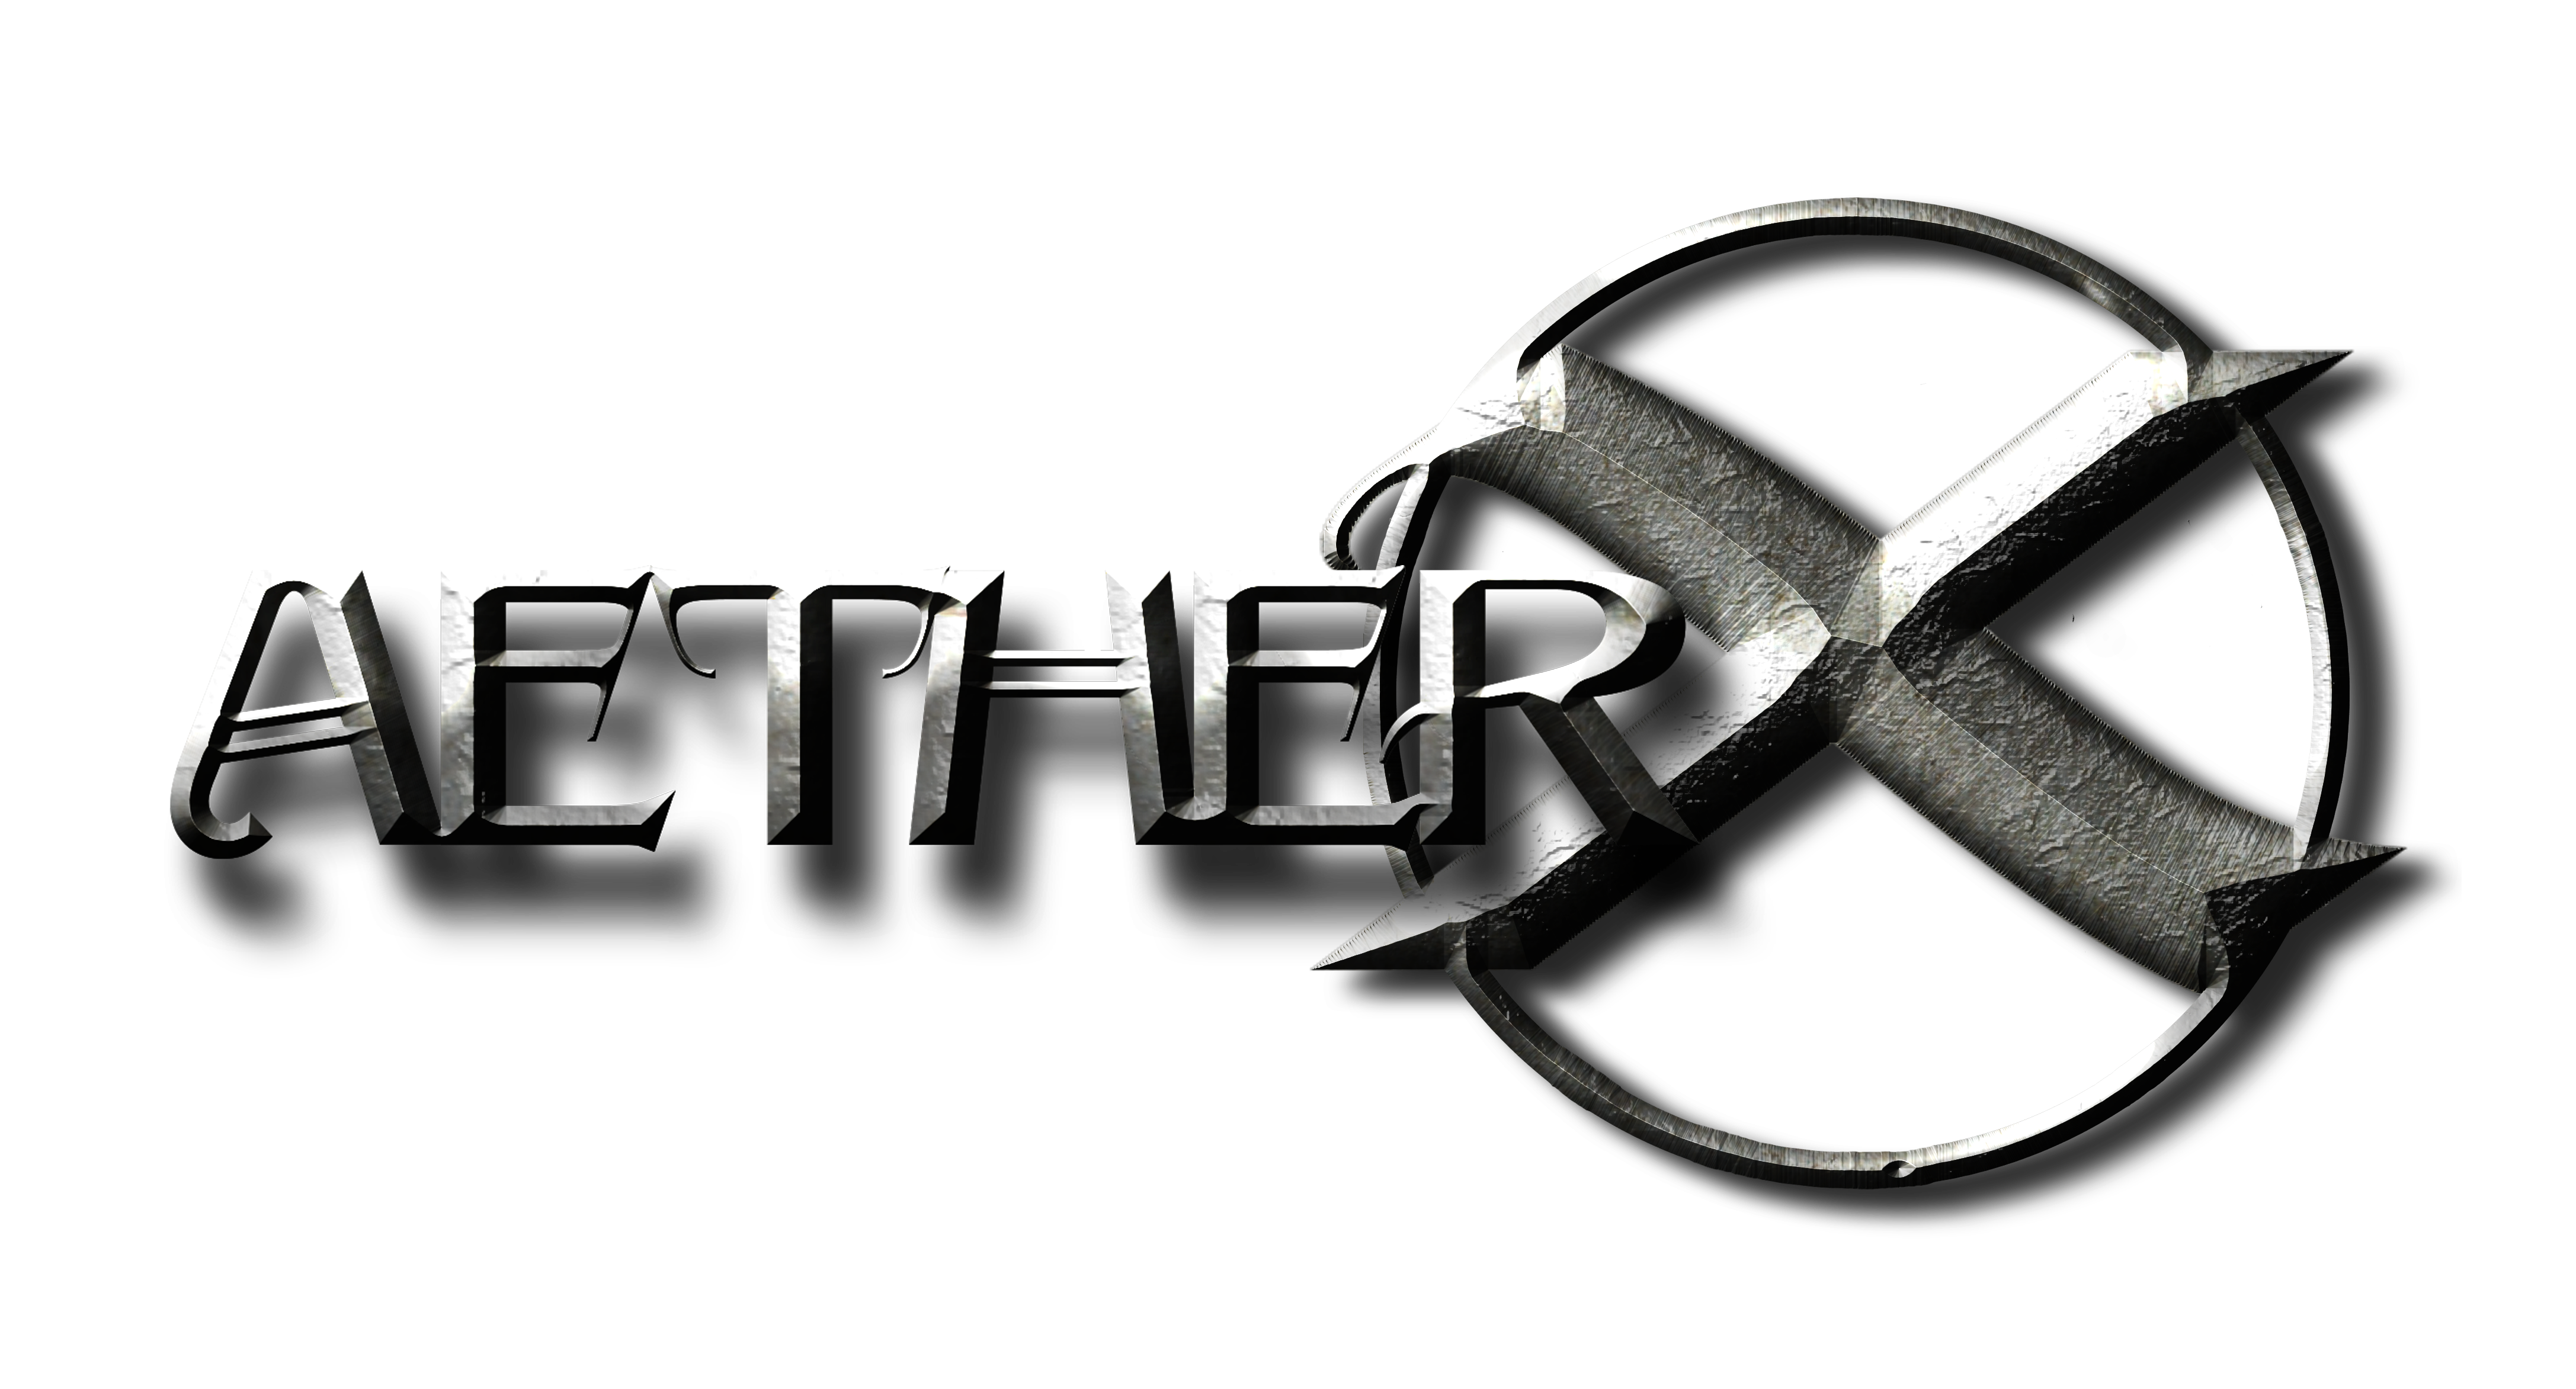 AetherX